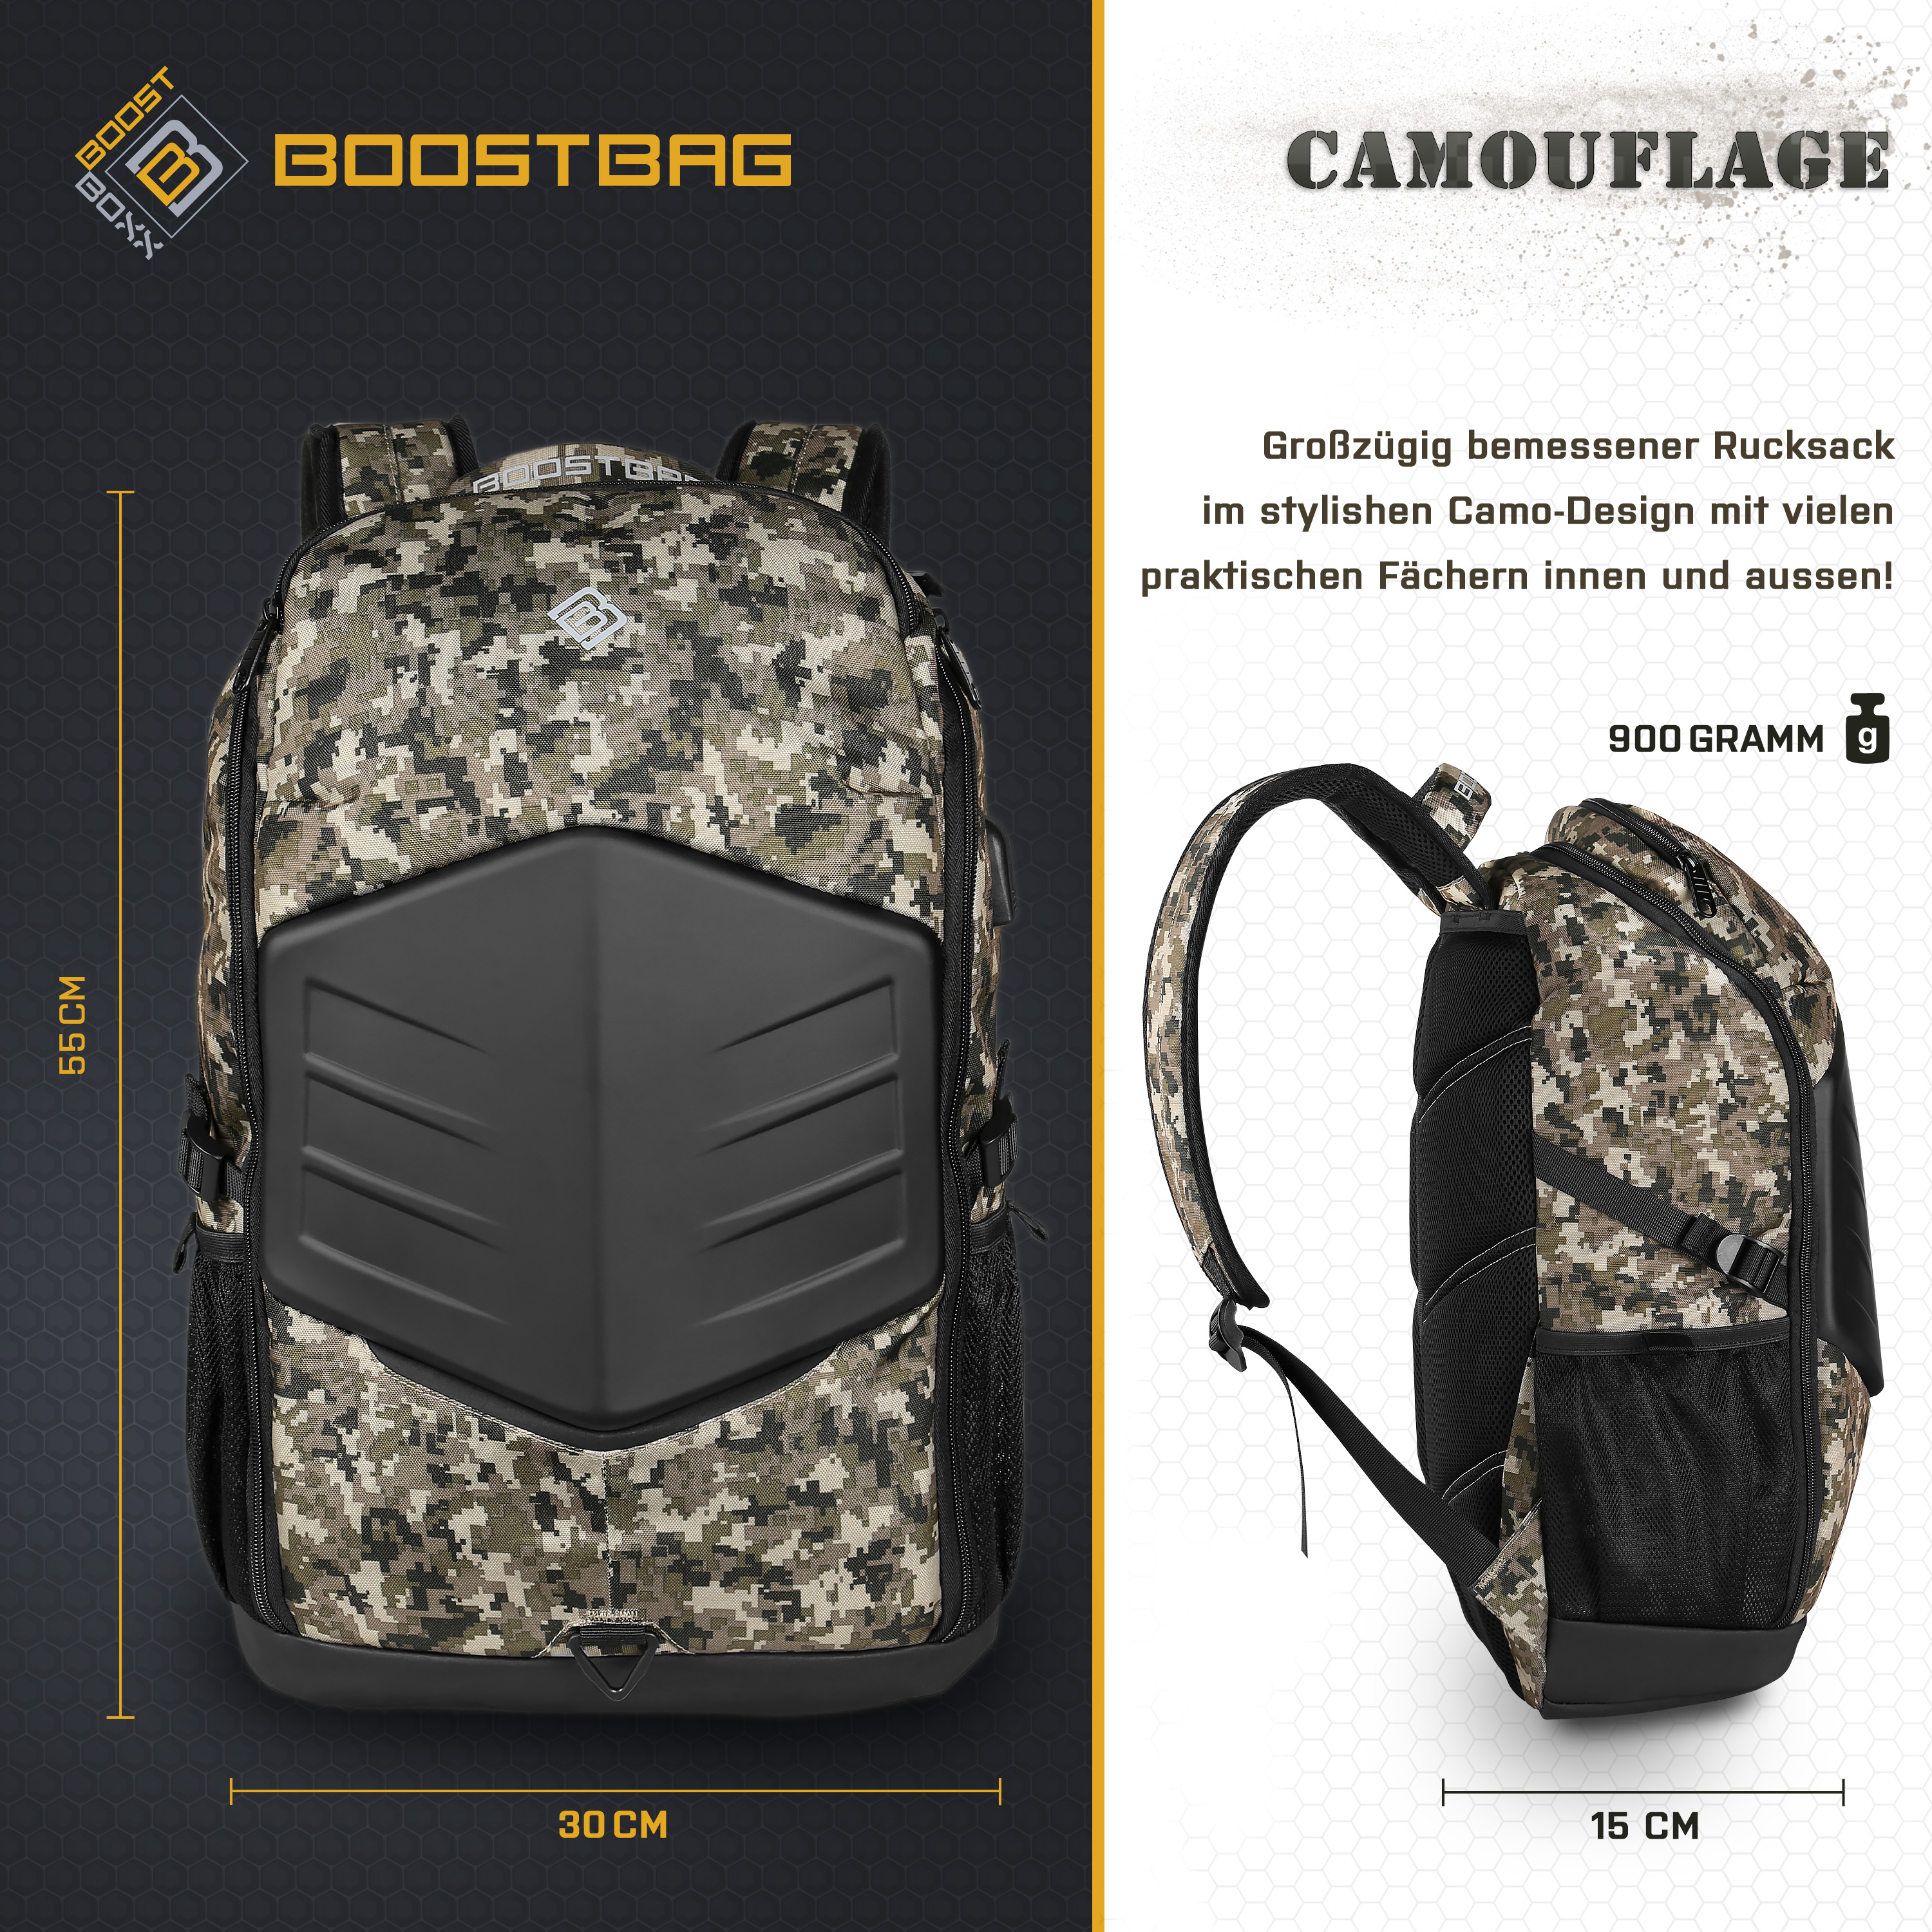 für Notebook-Rucksack Materialmix, BoostBag Universal army Rucksack Camouflage BOOSTBOXX